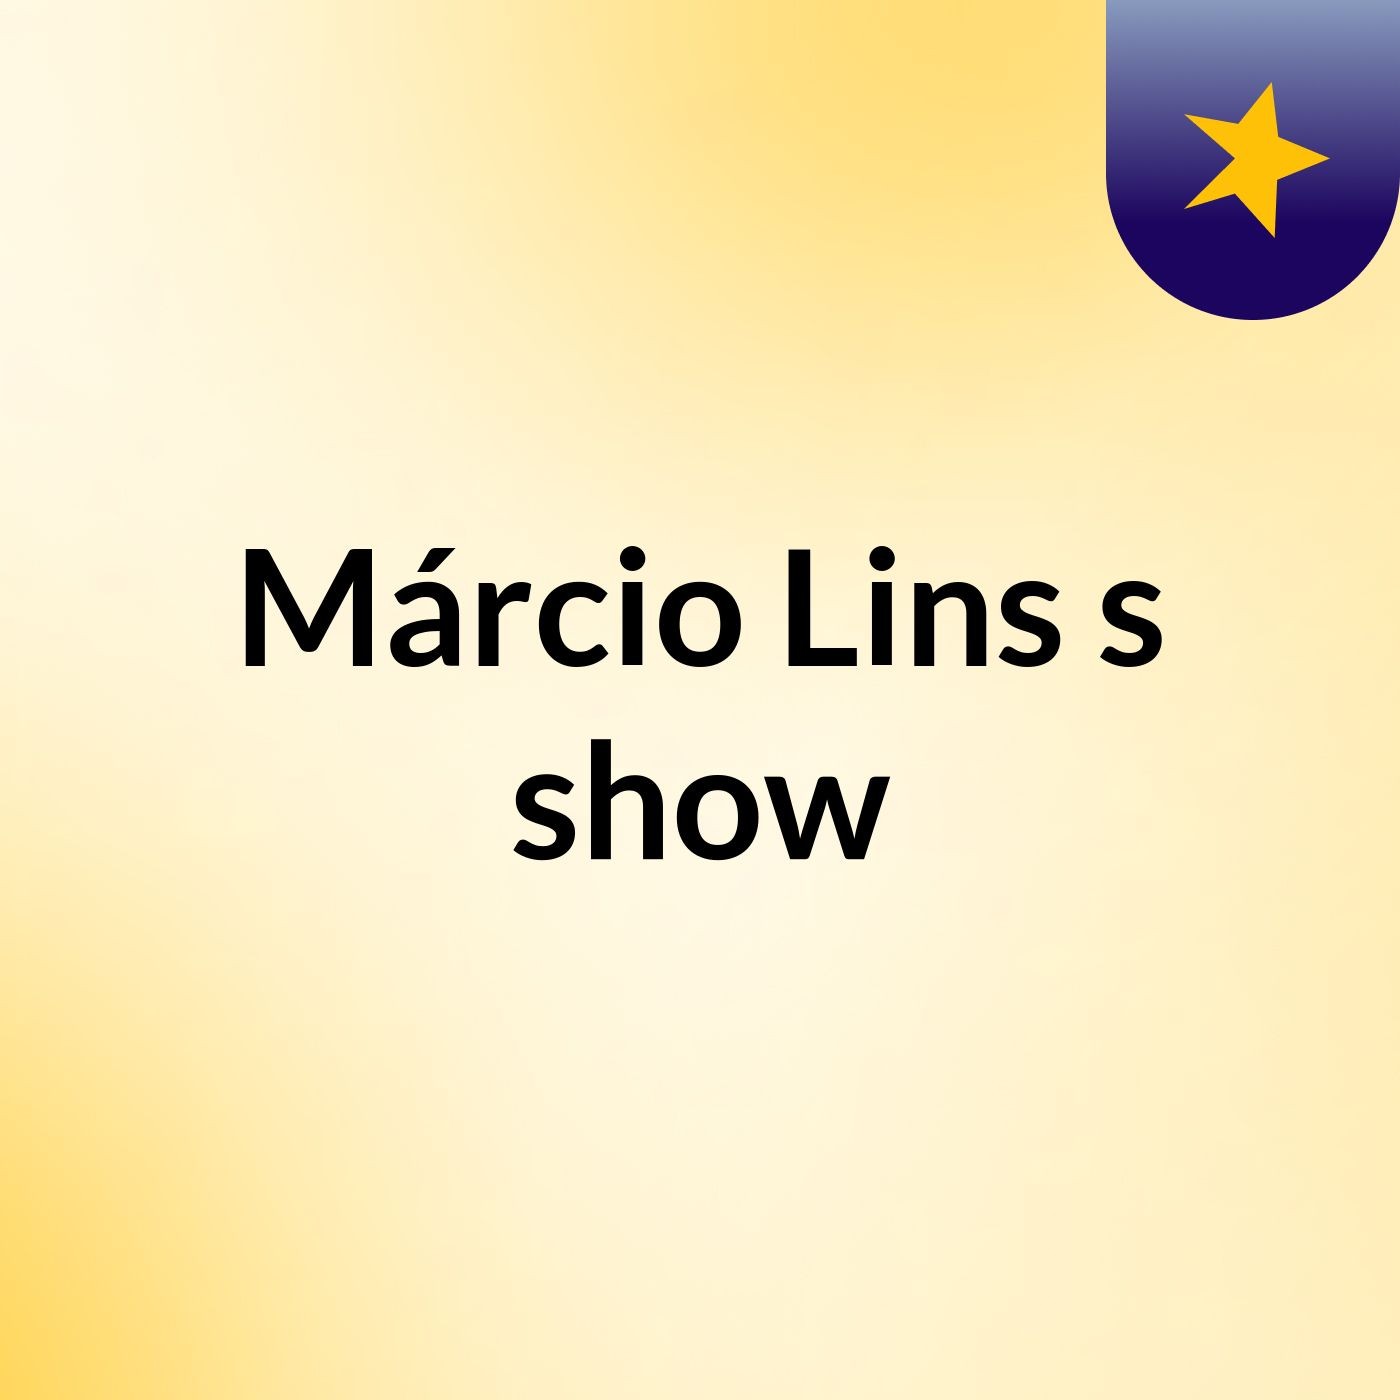 Márcio Lins's show